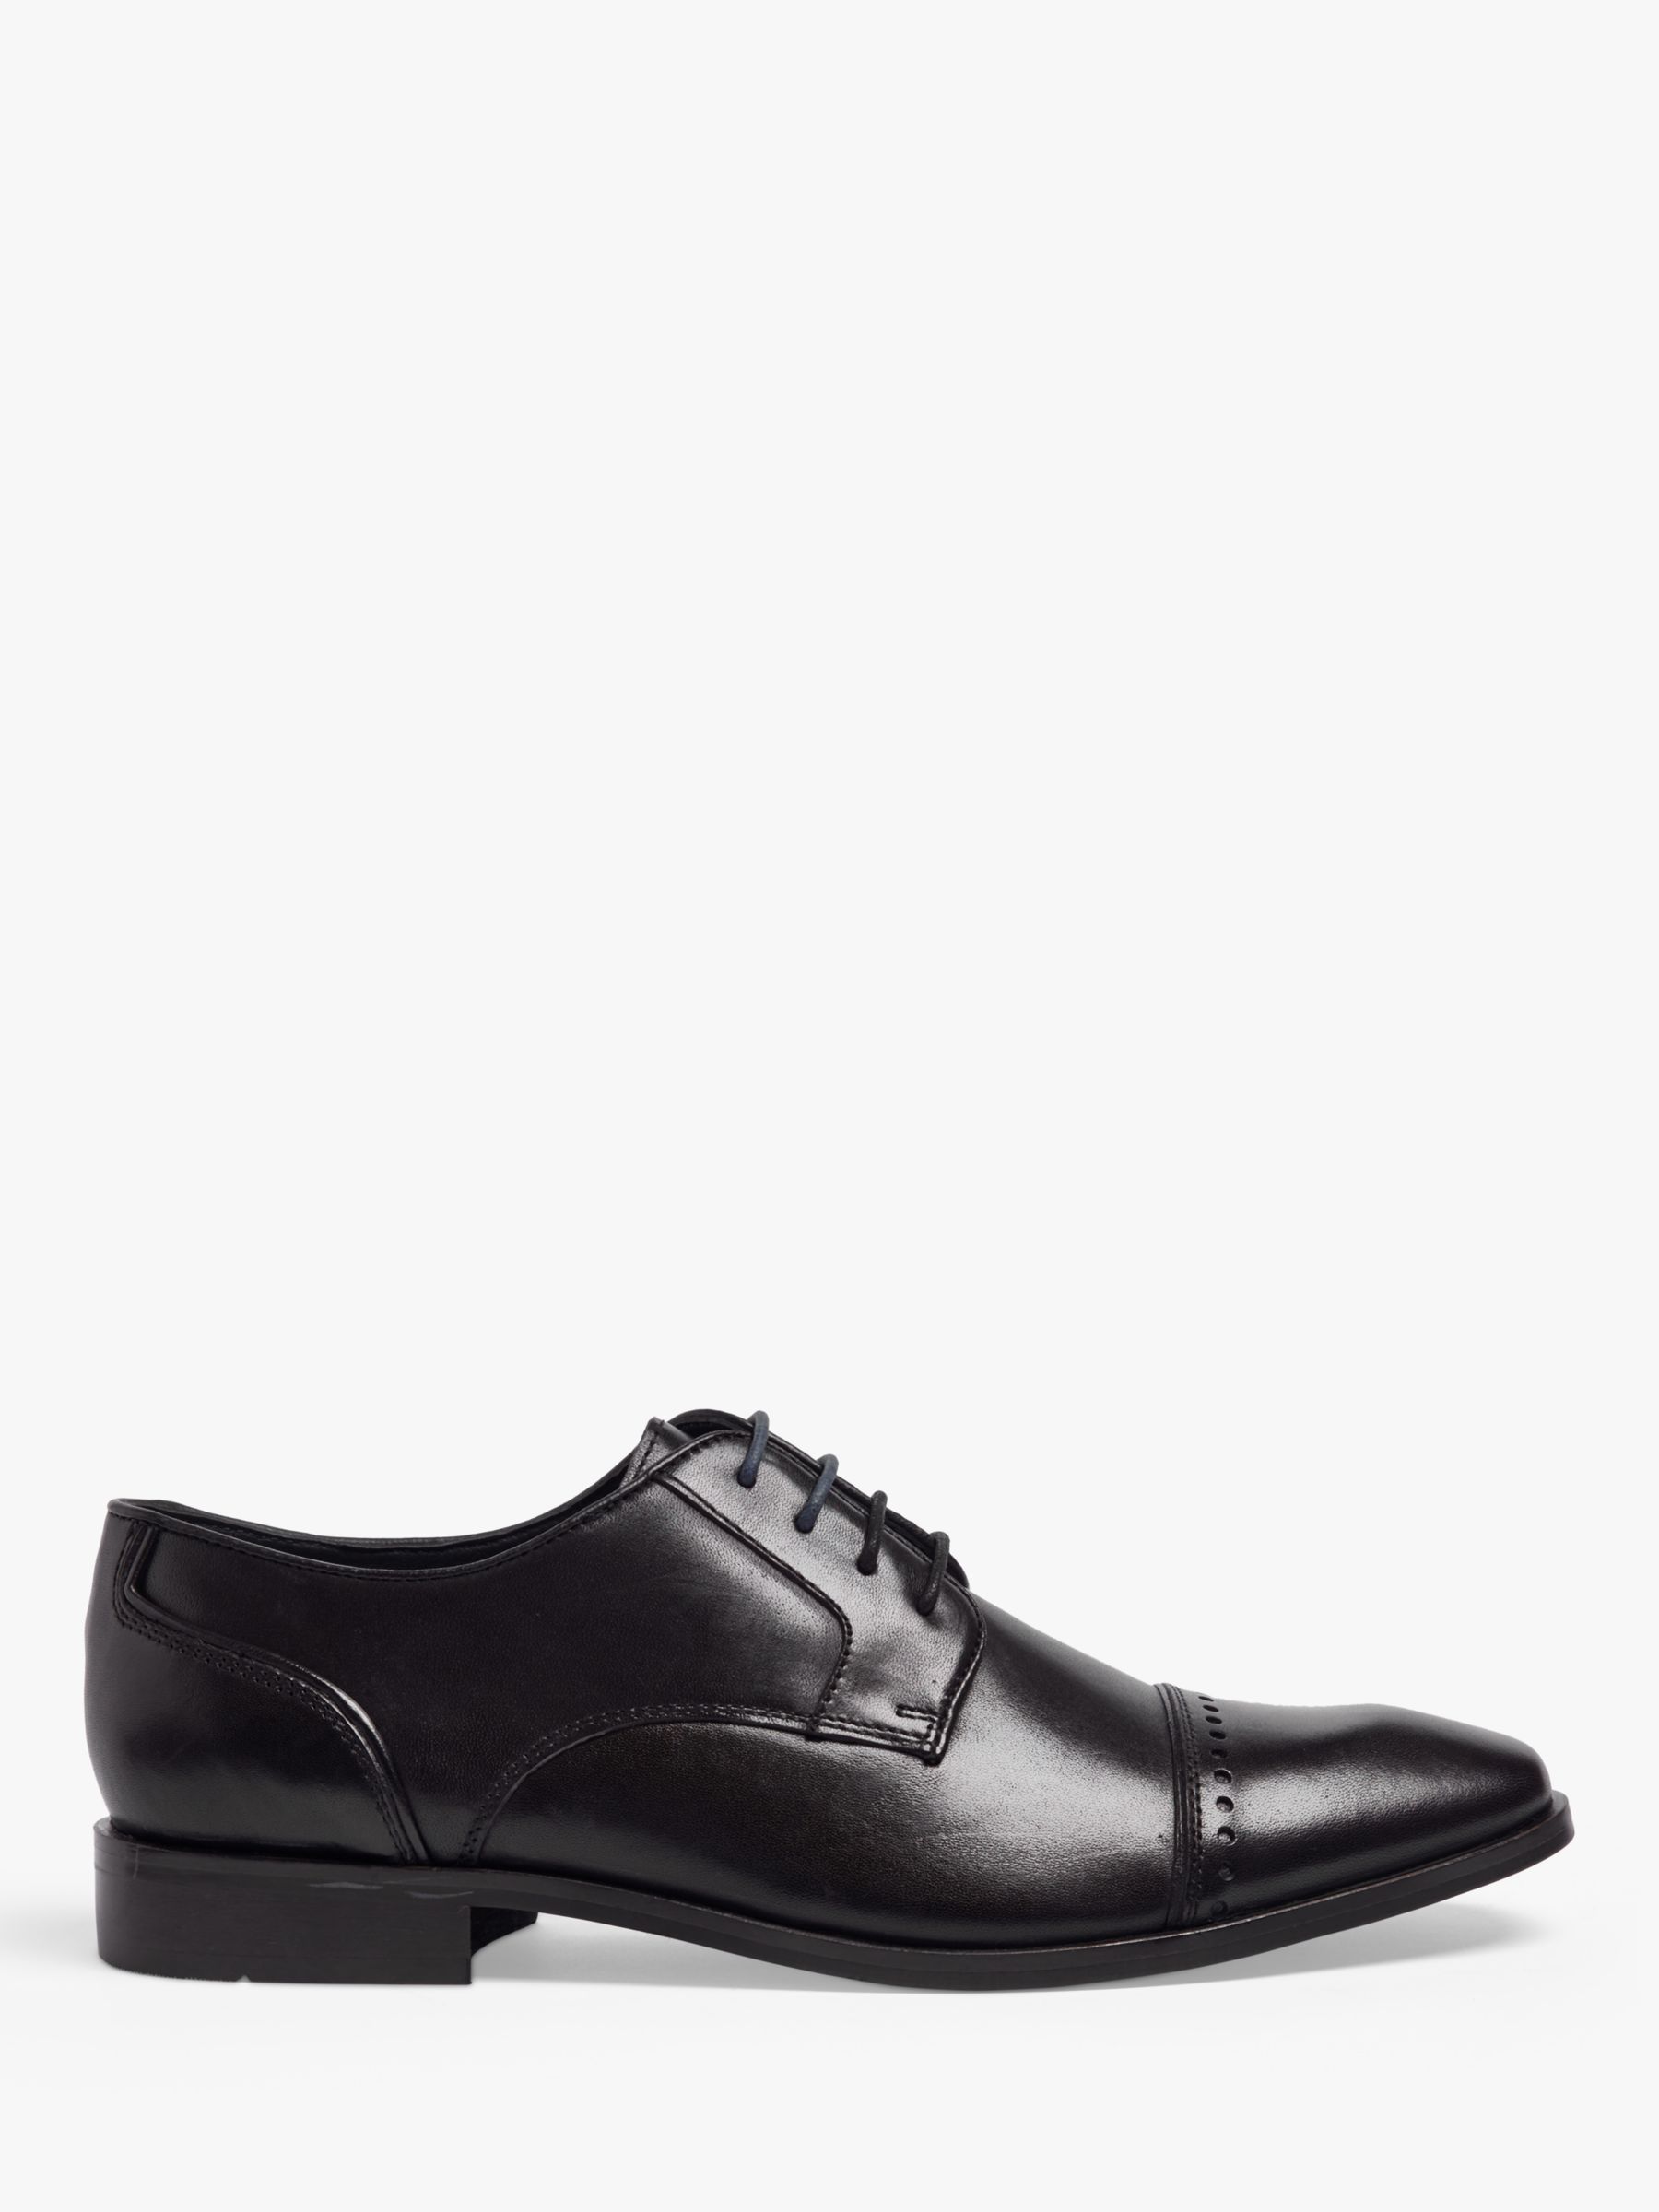 Pod Regus Leather Brogue Detail Shoes, Black, 6